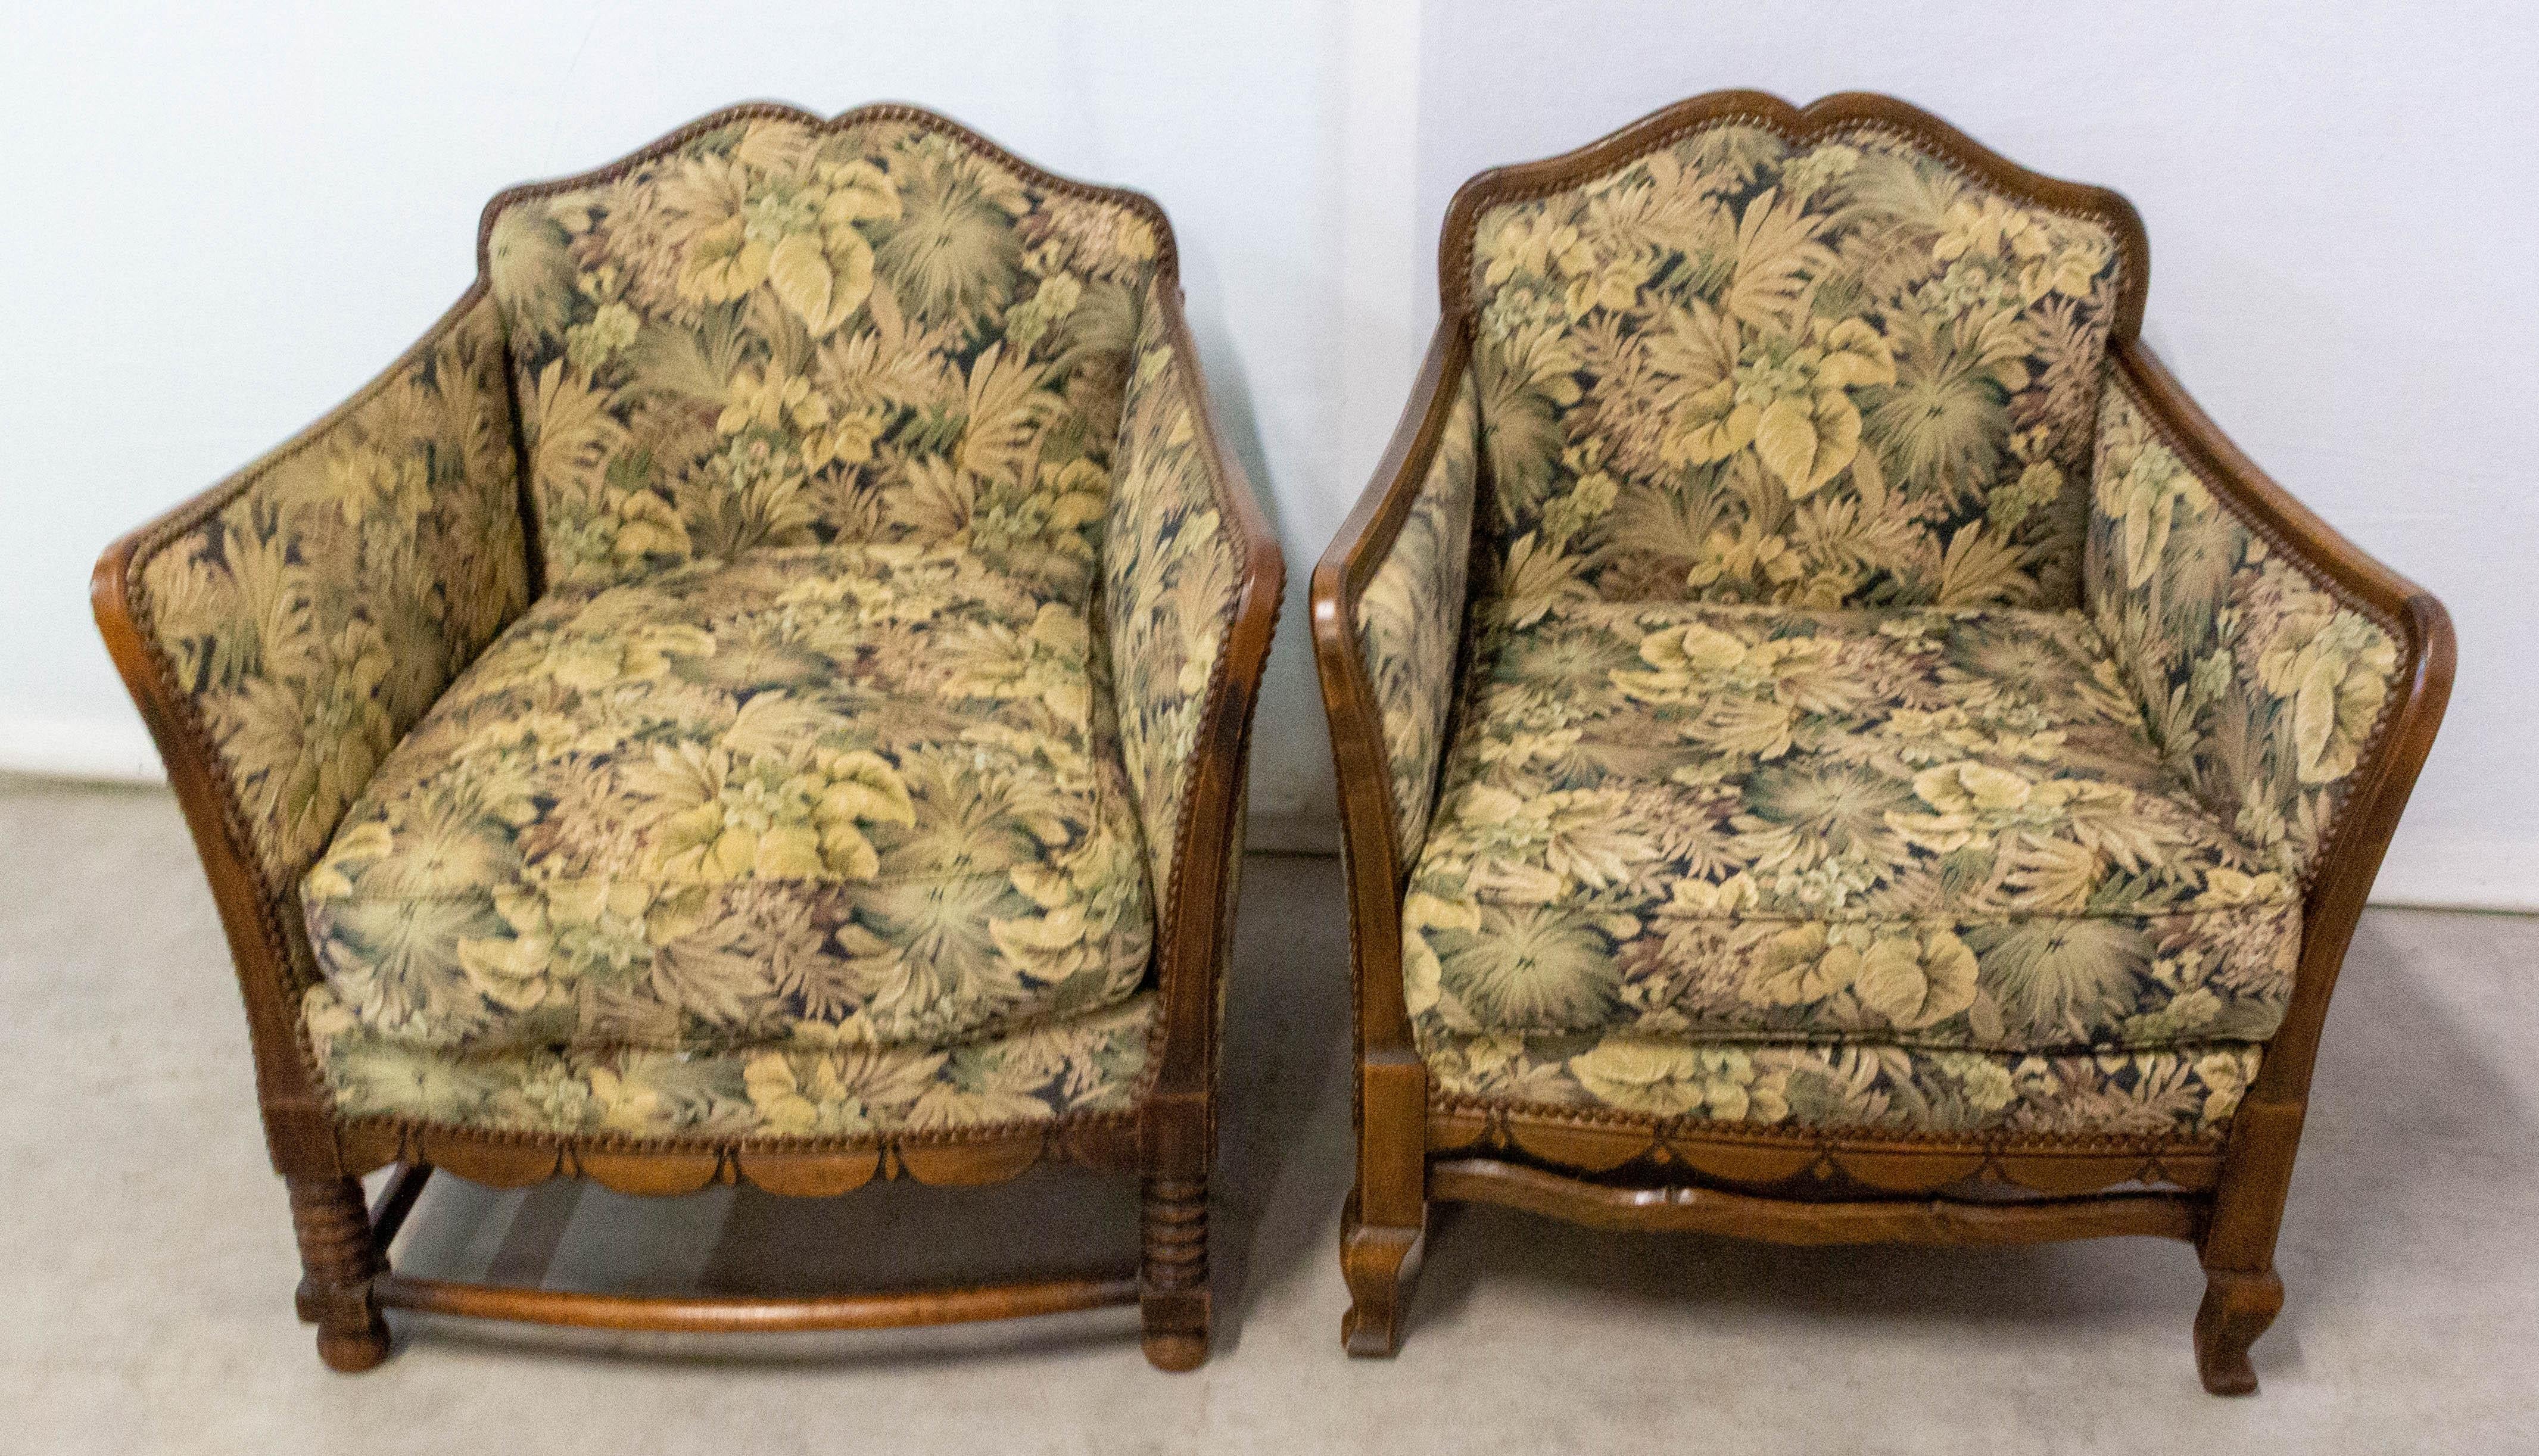 Paar französische Sessel oder Schreibtischstühle aus Buche, neu zu polstern
um 1920
Die beiden Sessel sind sich sehr ähnlich, aber es sind nicht dieselben Modelle.
Sehr bequem.
Guter Zustand
Die Rahmen sind solide und stabil.

Versand:
-